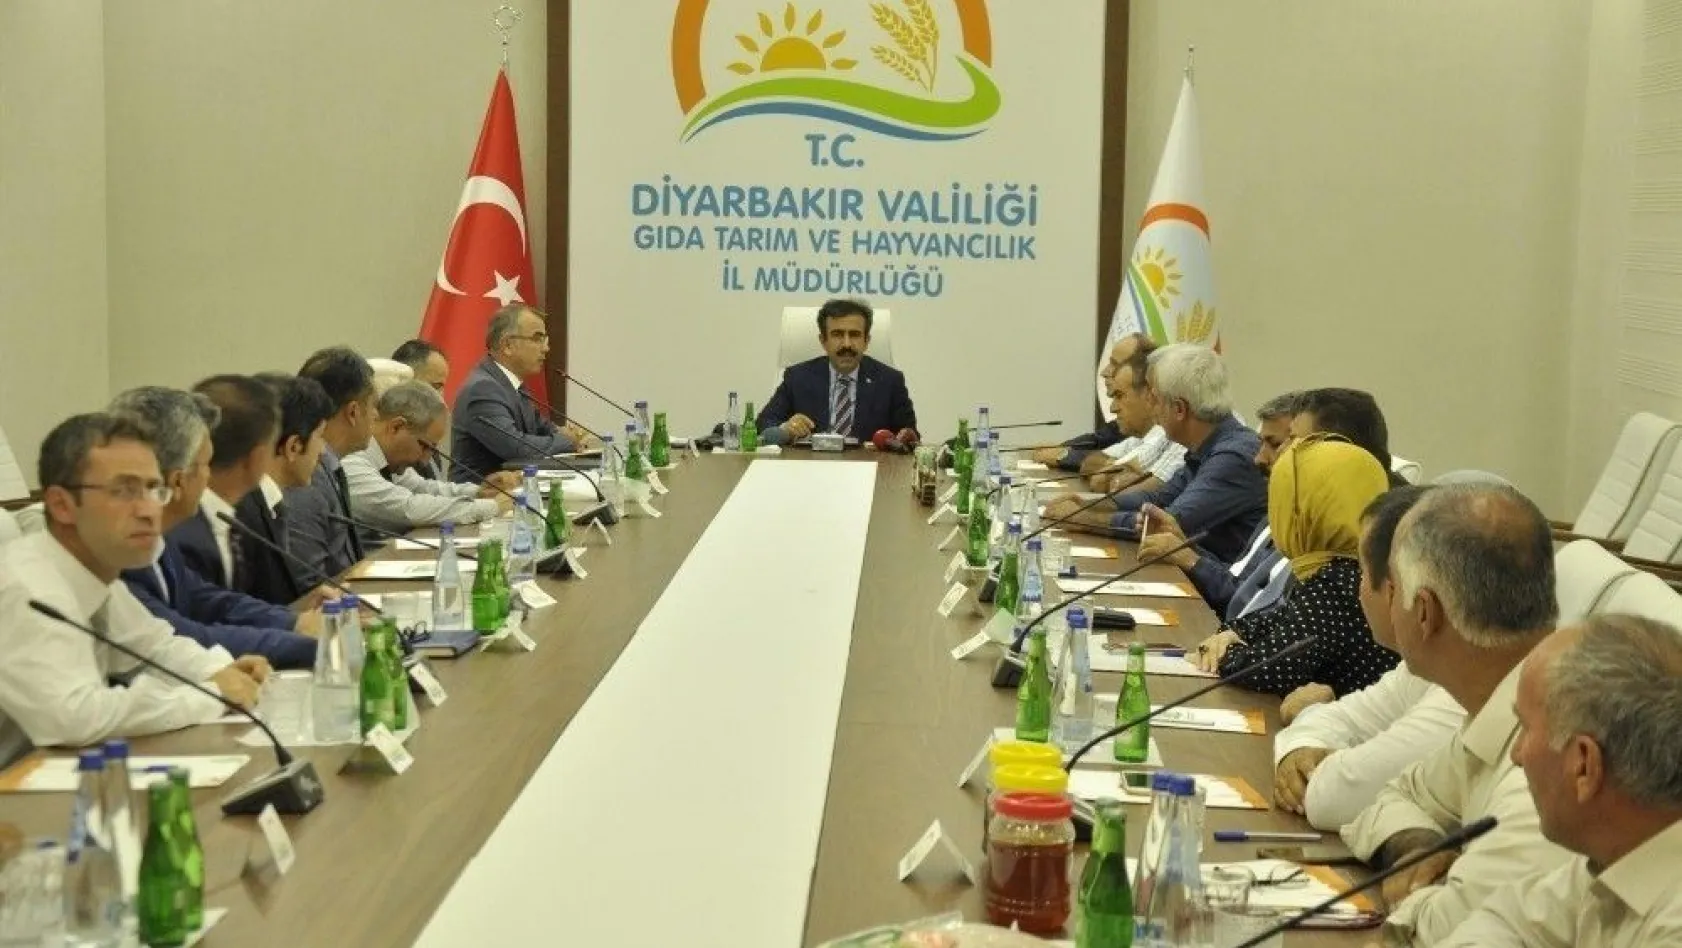 Diyarbakır'da 7,3 milyar lira değerinde üretim gerçekleşti
